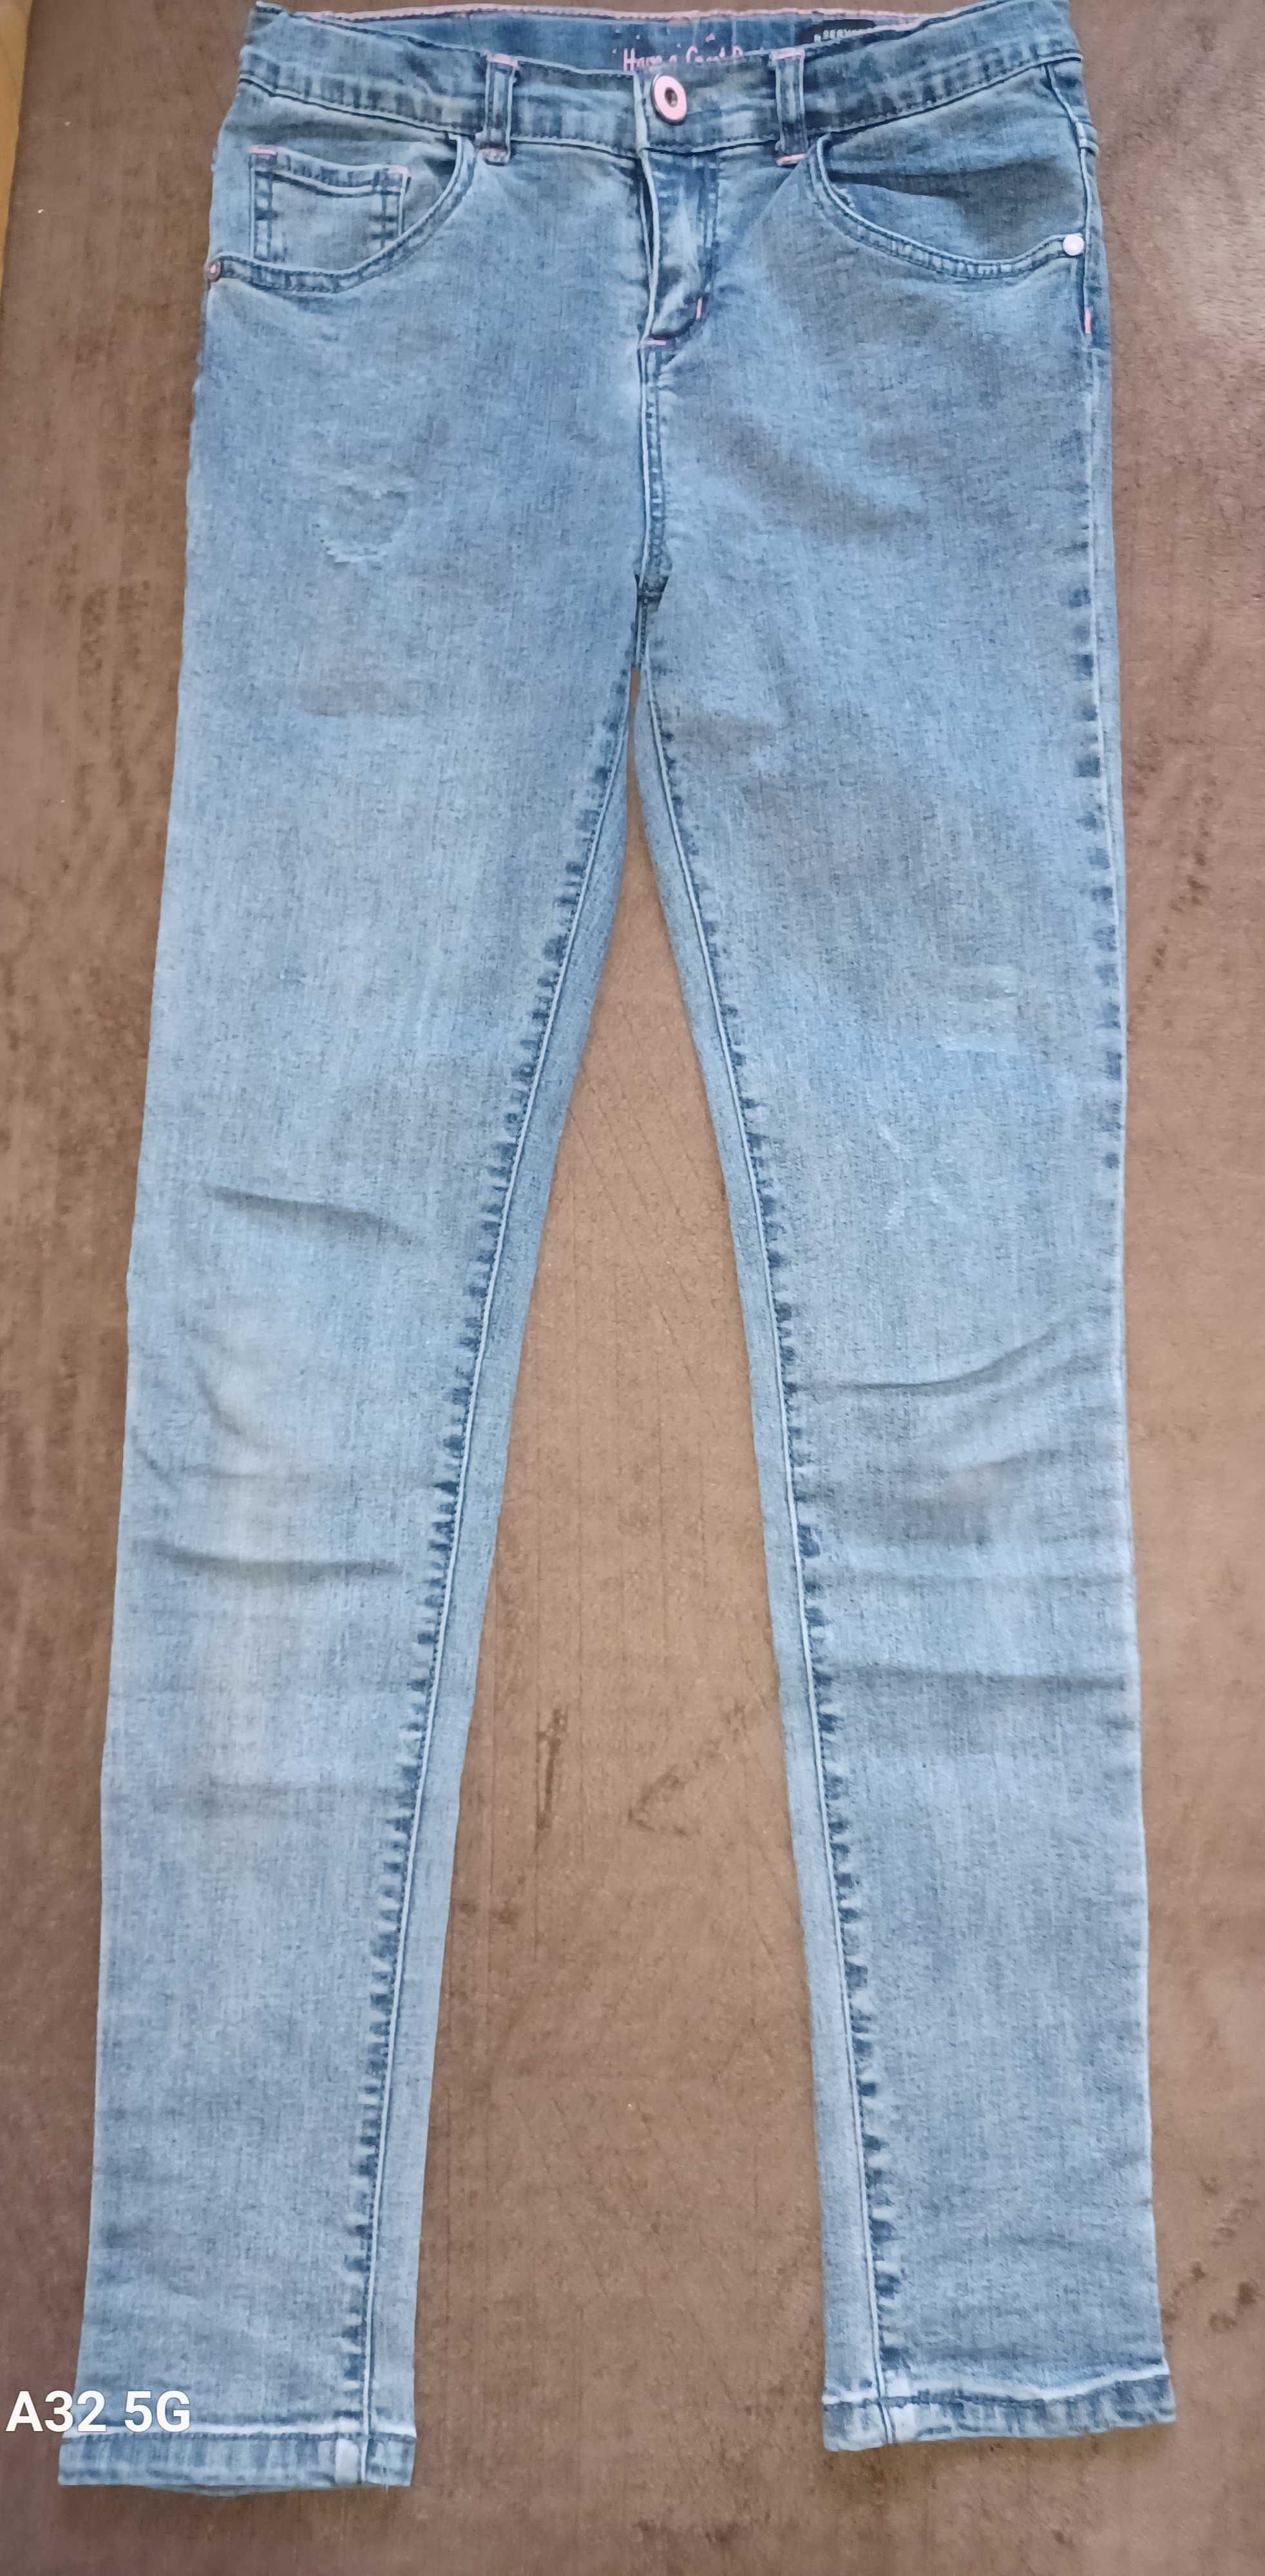 Spodnie jeans PIĘKNE rozmiar 158/164 cena za całość 6 sztuk